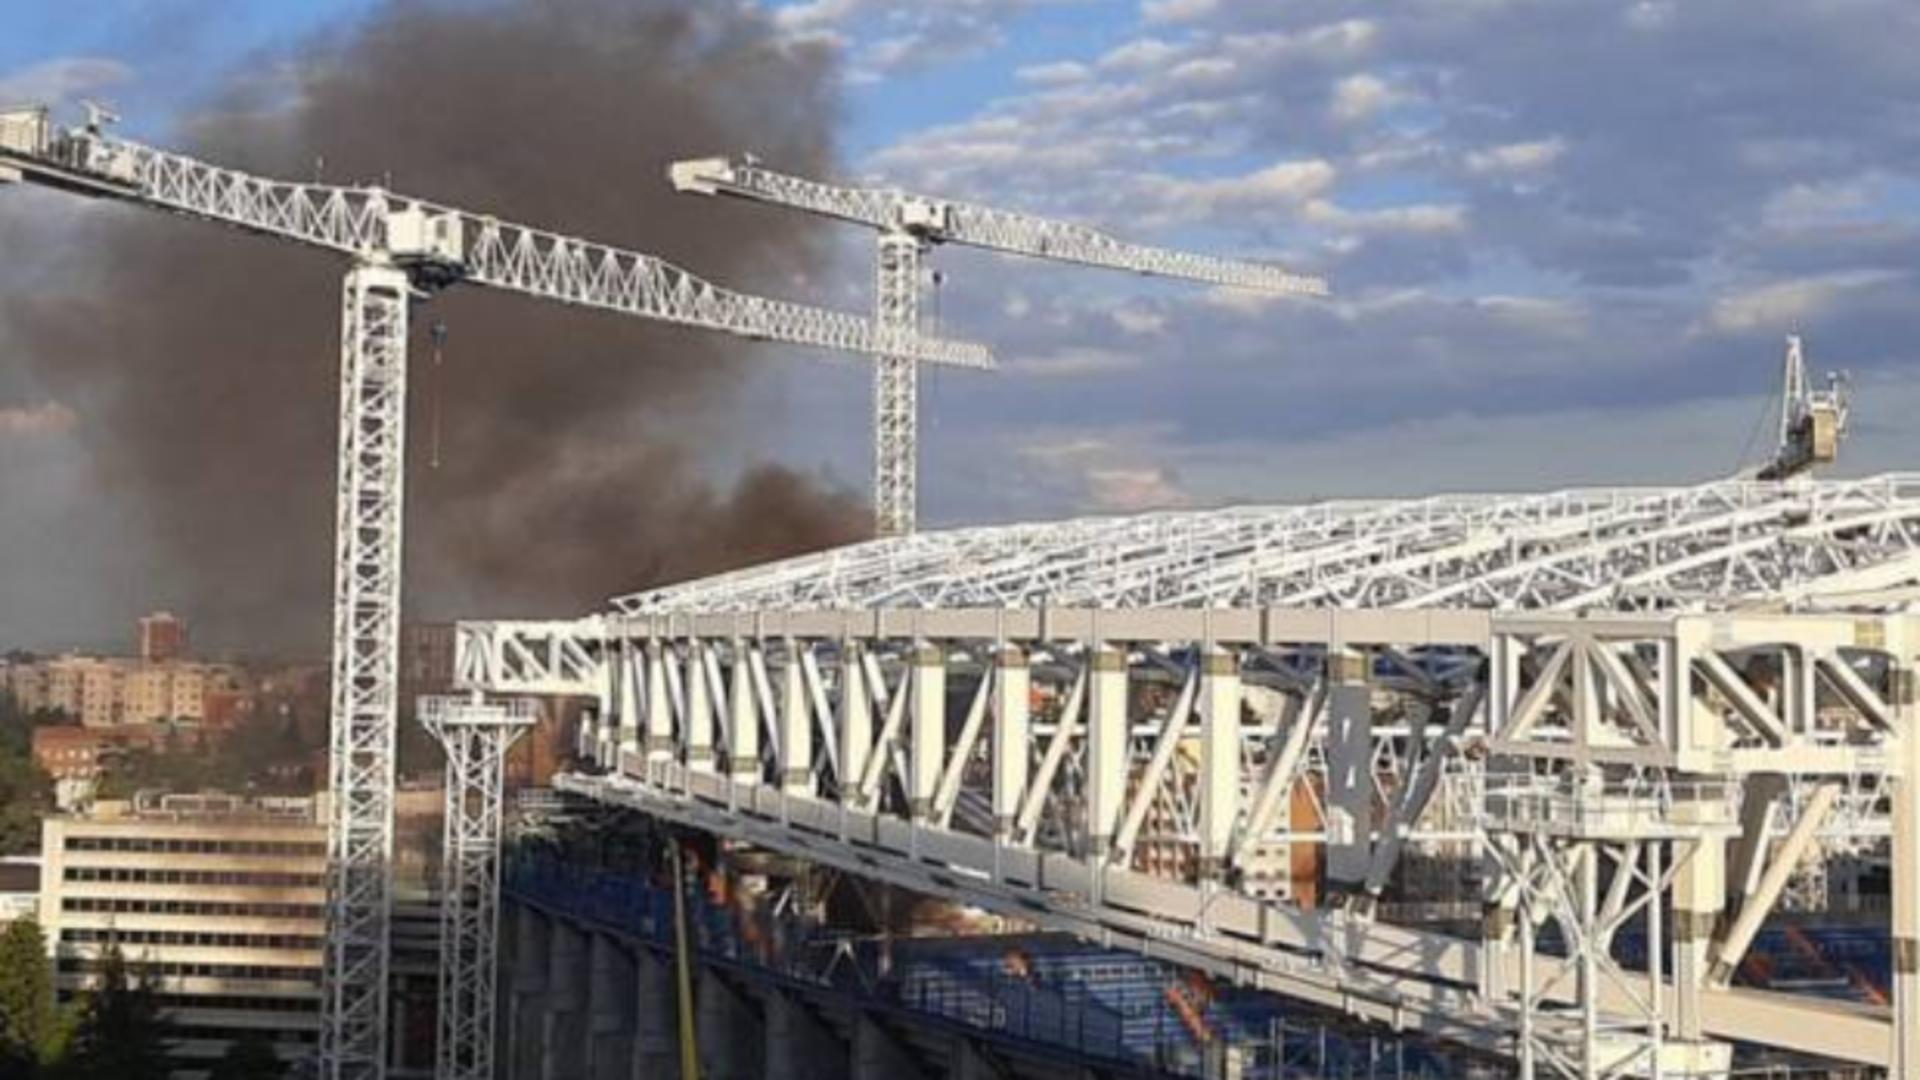 Incendiu puternic în capitala Spaniei - Stadionul pe care joacă Real Madrid, în flăcări Foto: Twitter.com